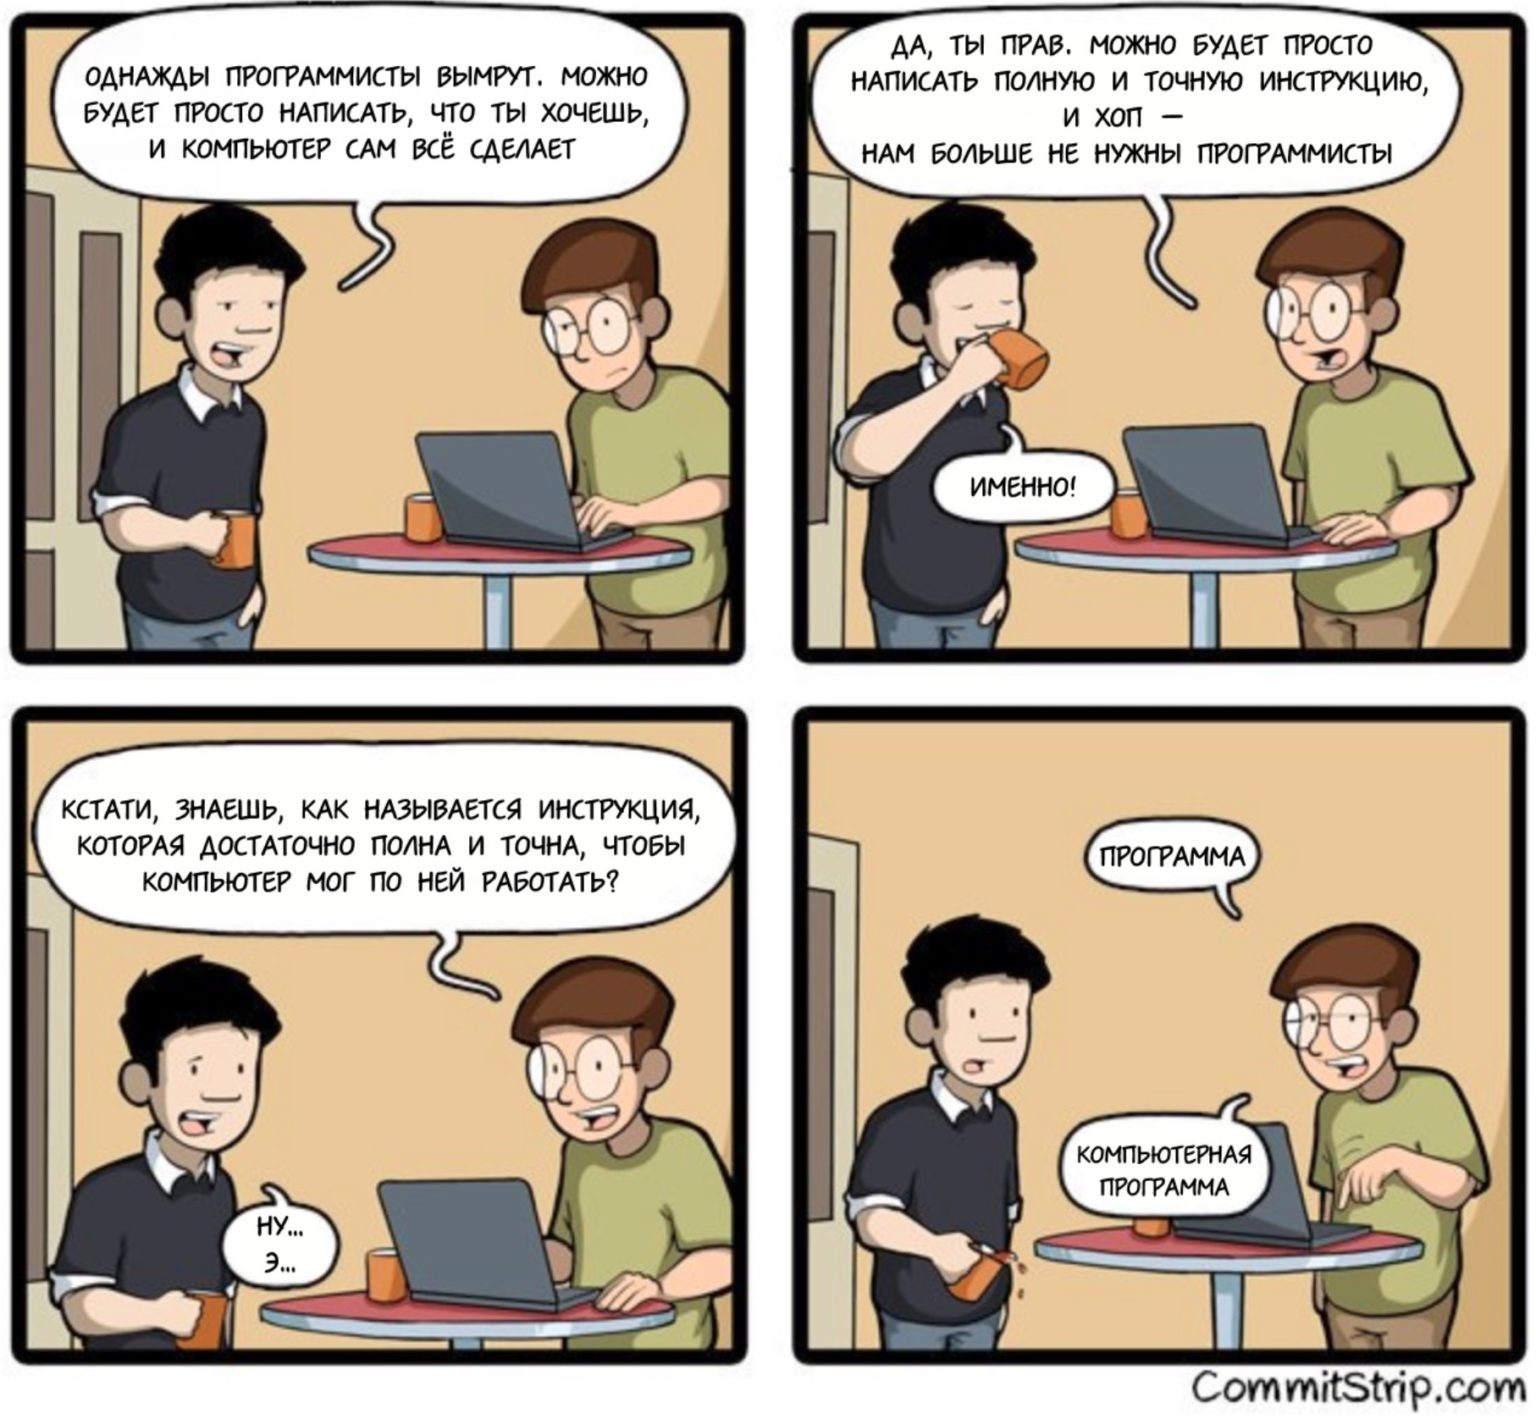 Programmers wife. Комиксы про программистов. Шутки про программистов. Веселые комиксы про программистов. Смешной программист.